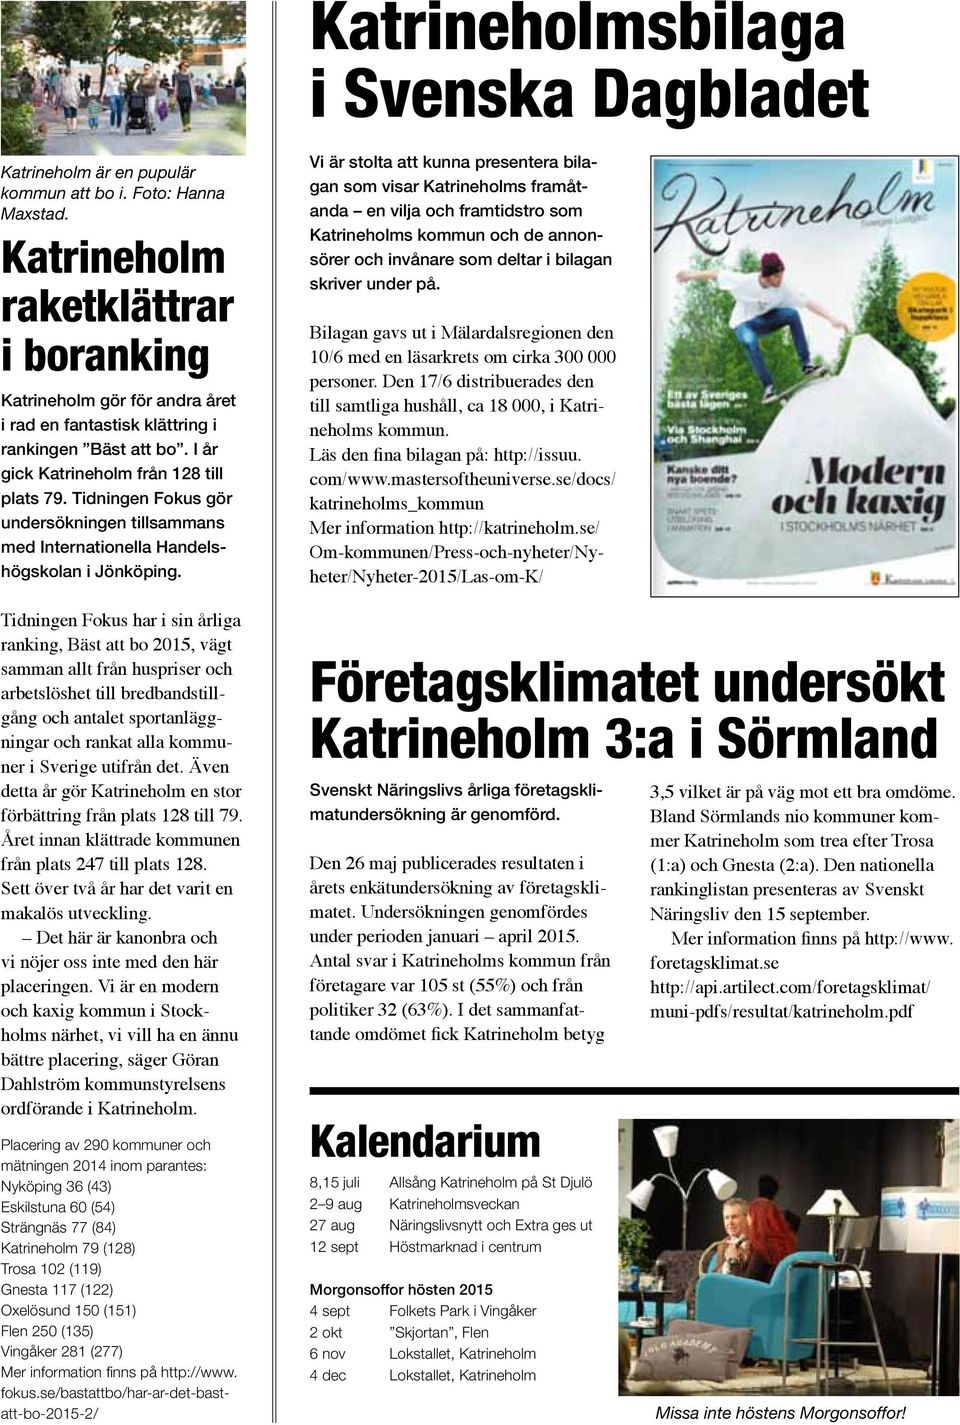 Tidningen Fokus gör undersökningen tillsammans med Internationella Handelshögskolan i Jönköping.